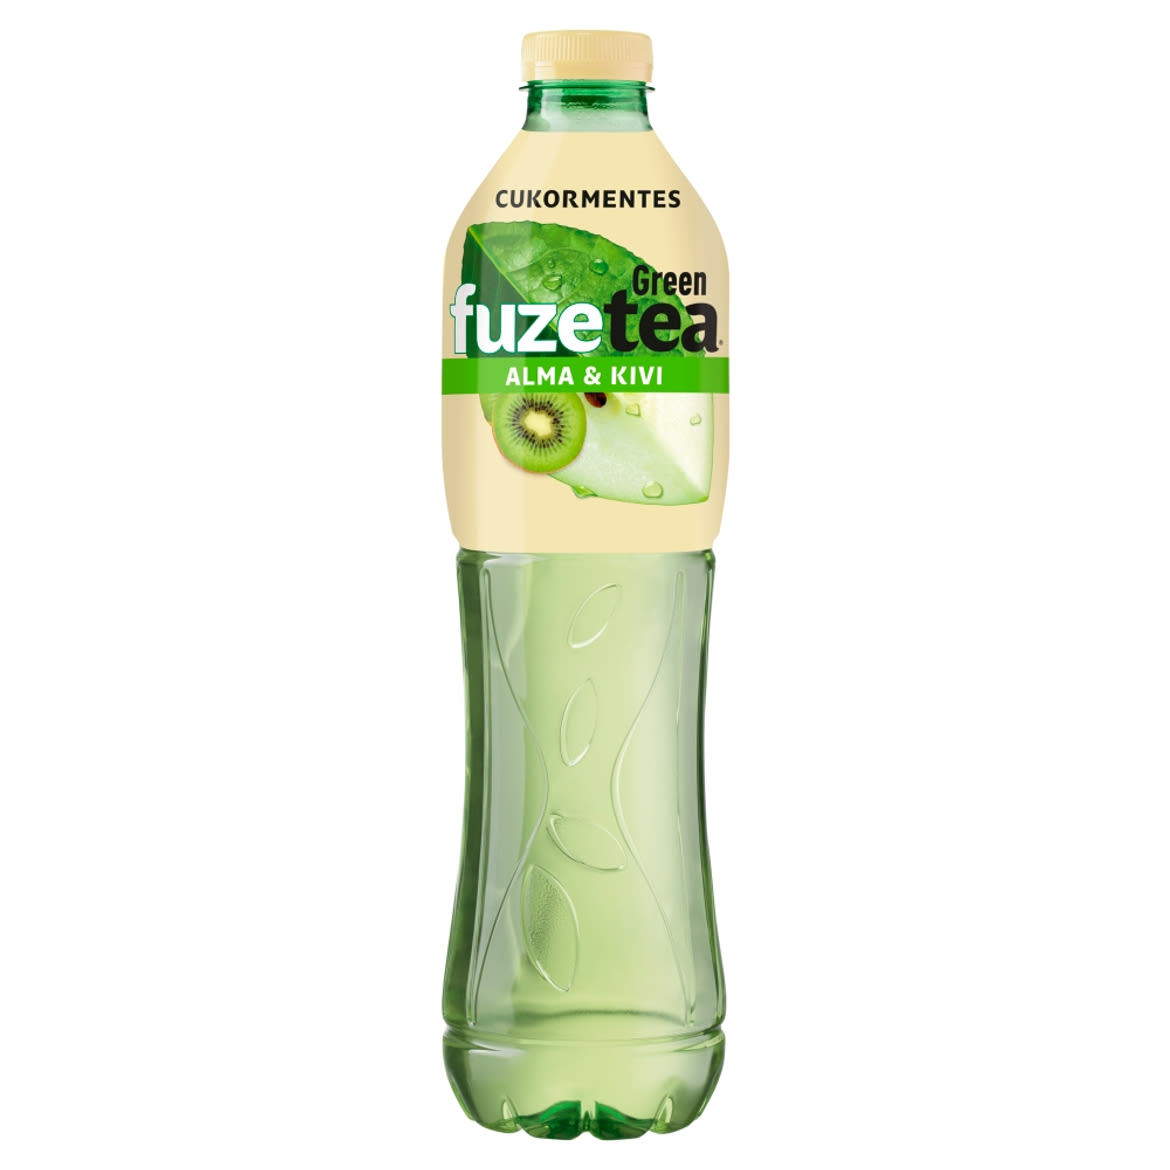 FUZETEA Zero energiamentes, szénsavmentes, alma és kivi ízű üdítőital zöld tea kivonattal